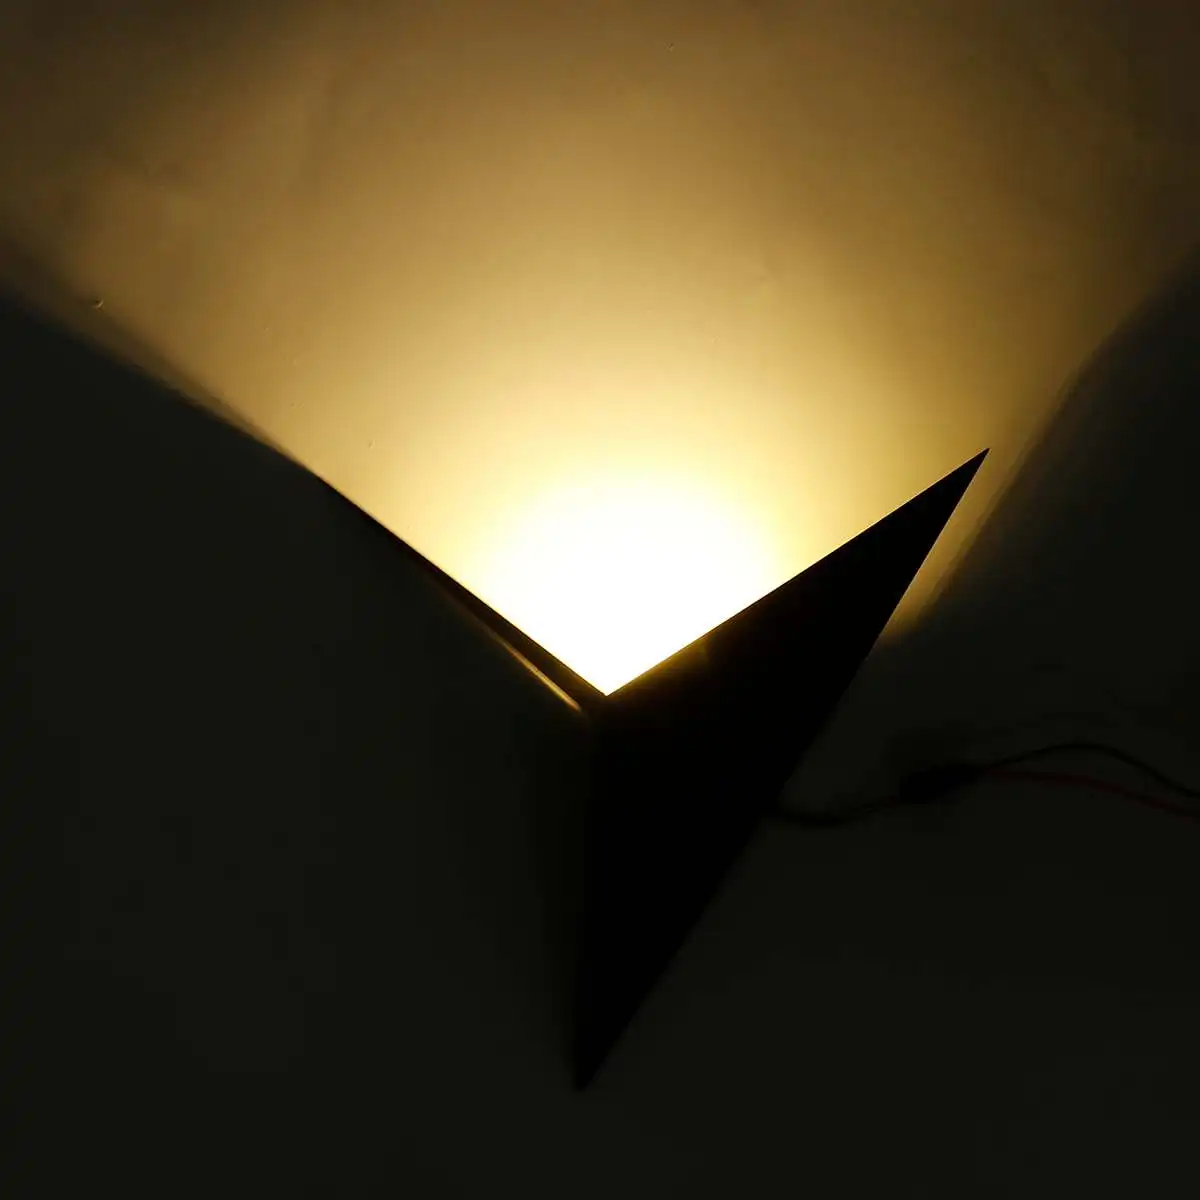 3 Вт креативный треугольный настенный светильник в форме кованого железа, Простой настенный светильник для спальни, кабинета, гостиничного номера, прикроватный светодиодный настенный светильник, зеркальные фары для дома - Цвет абажура: Black warm light